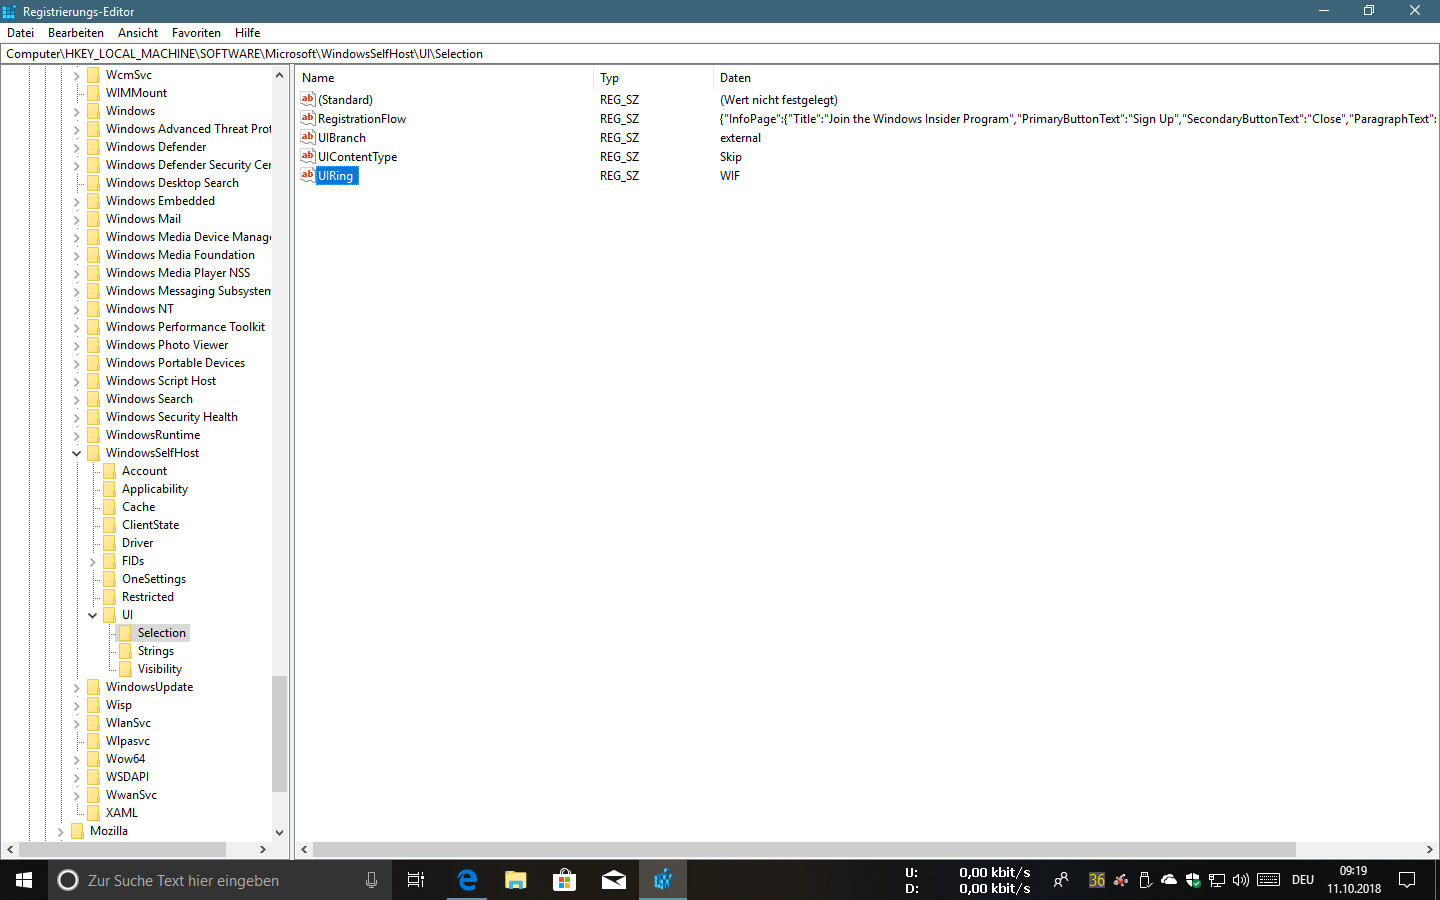 Windows Insider Programm - Einstellung "Nur Updates, Apps und Treiber" lässt n´sich nicht...